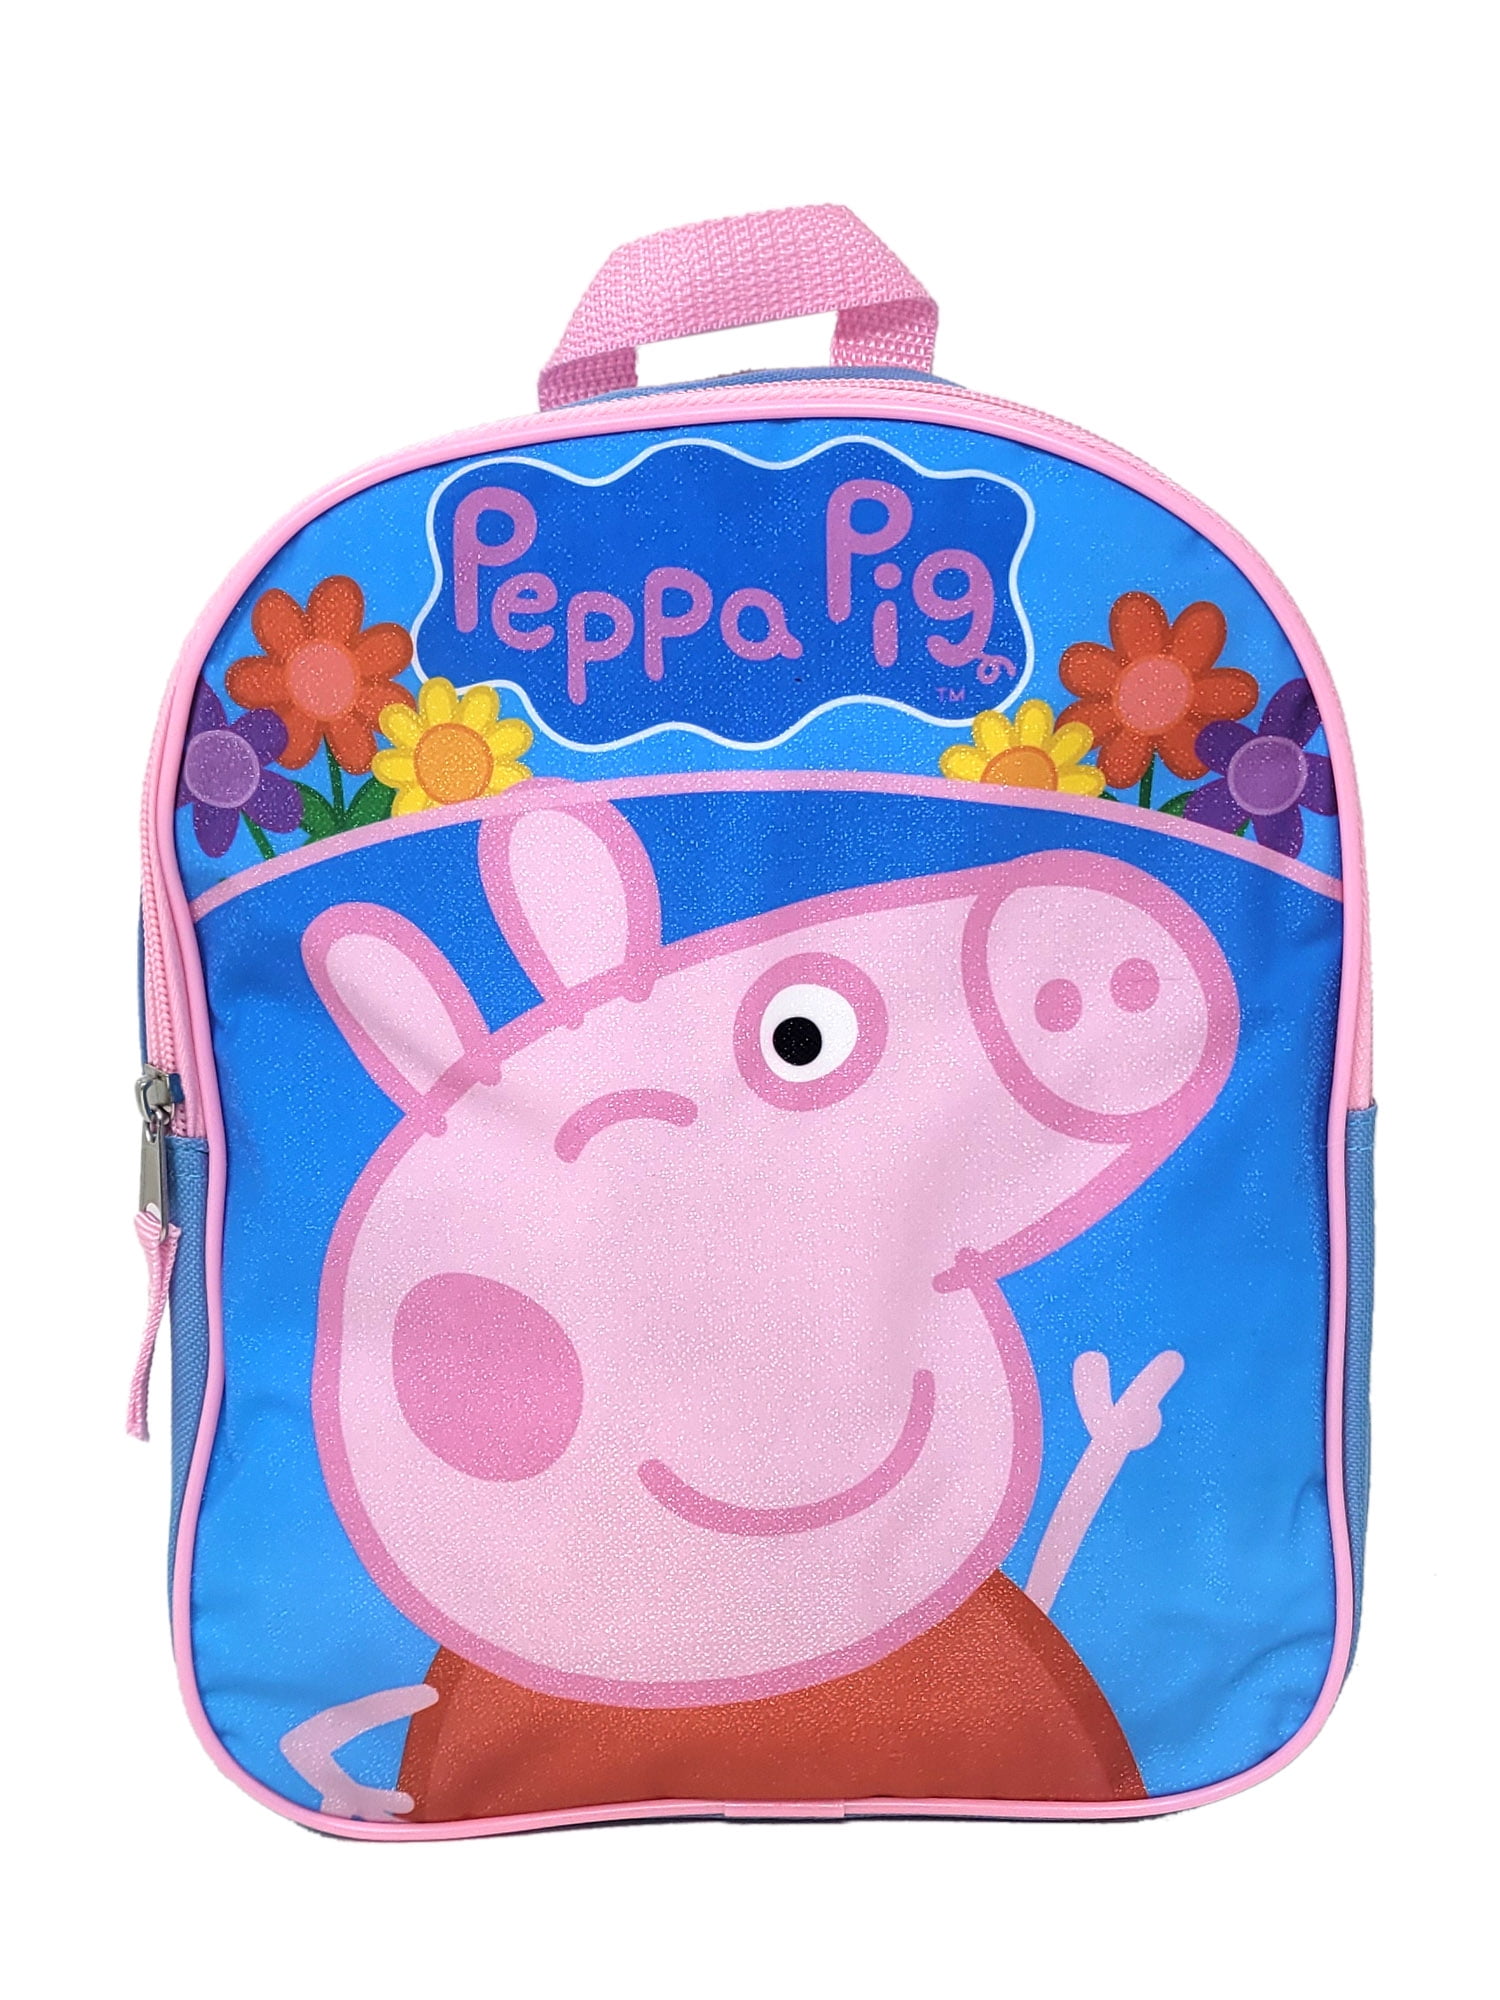 Peppa pig inspired party favor bags | KraftyKambri